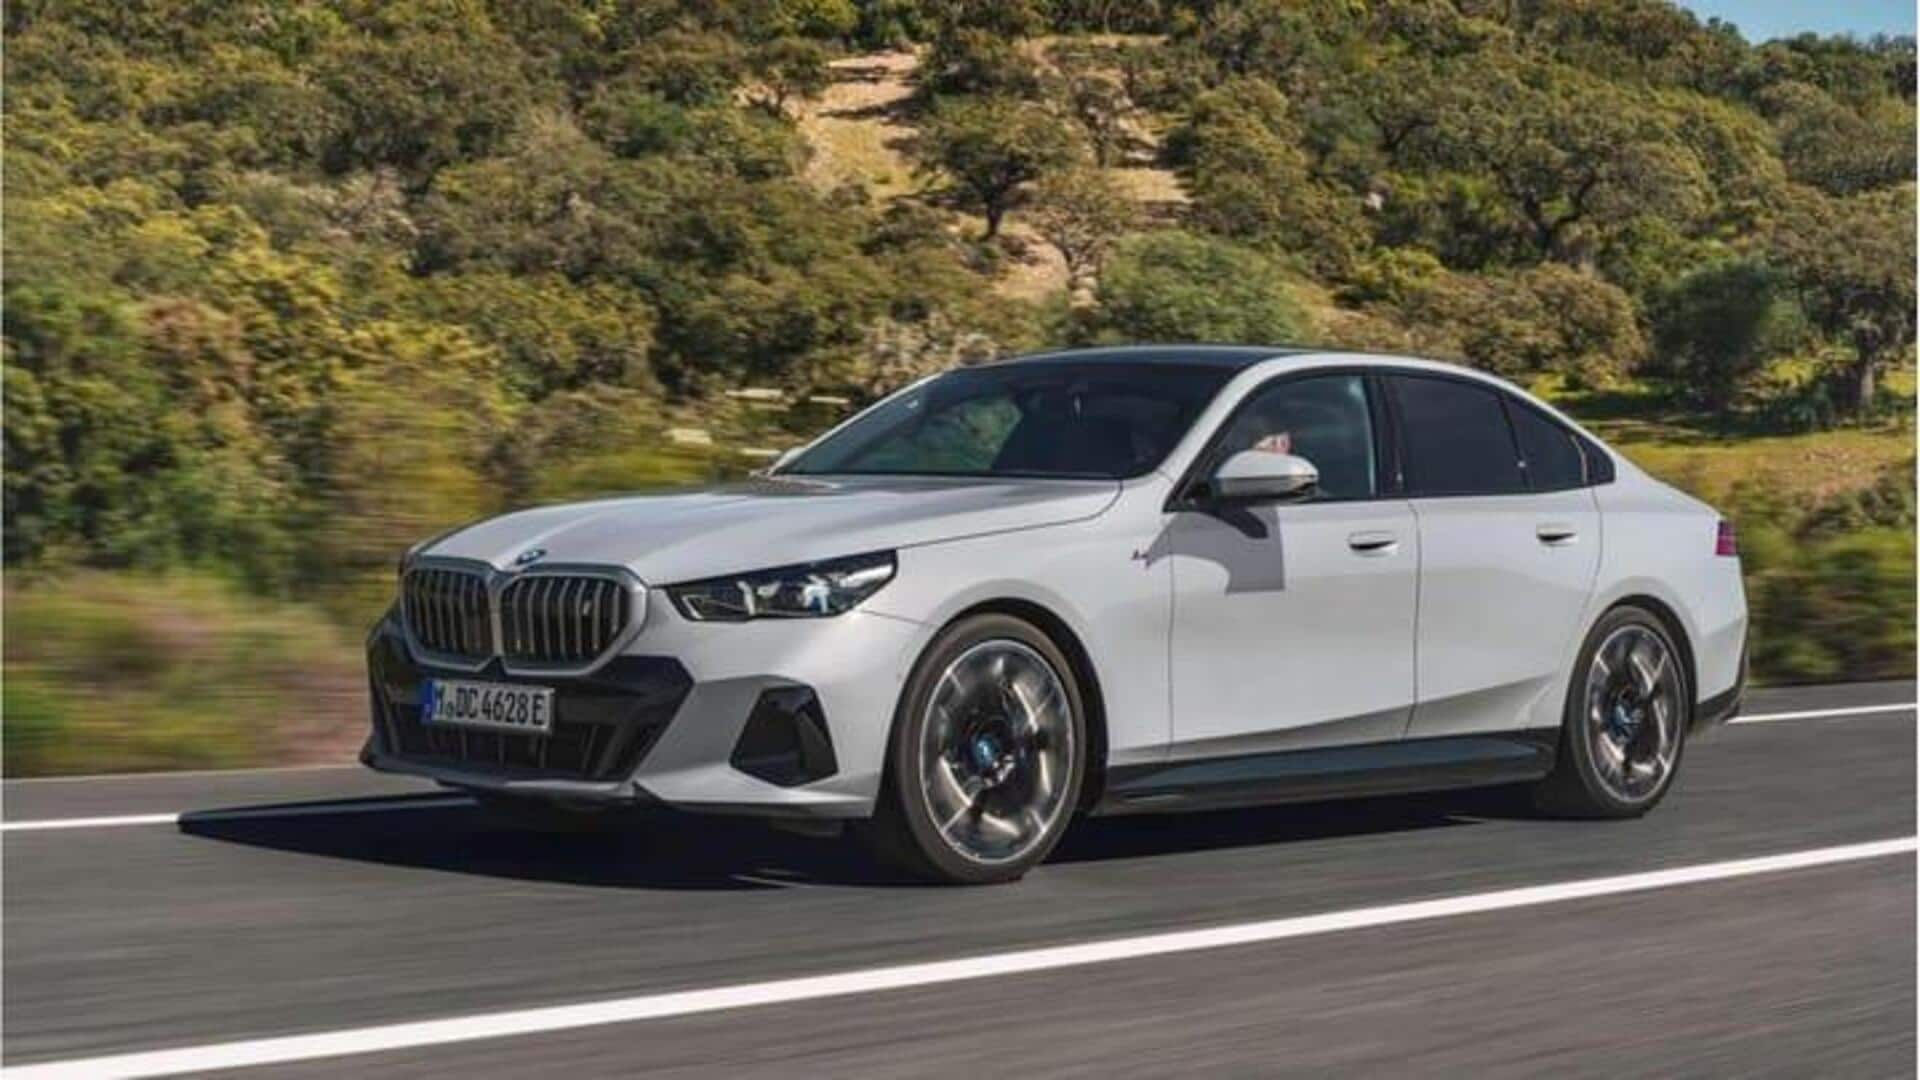 Mobil plug-in hybrid baru BMW 5 Series menawarkan efisiensi bahan bakar hingga 100 km/liter